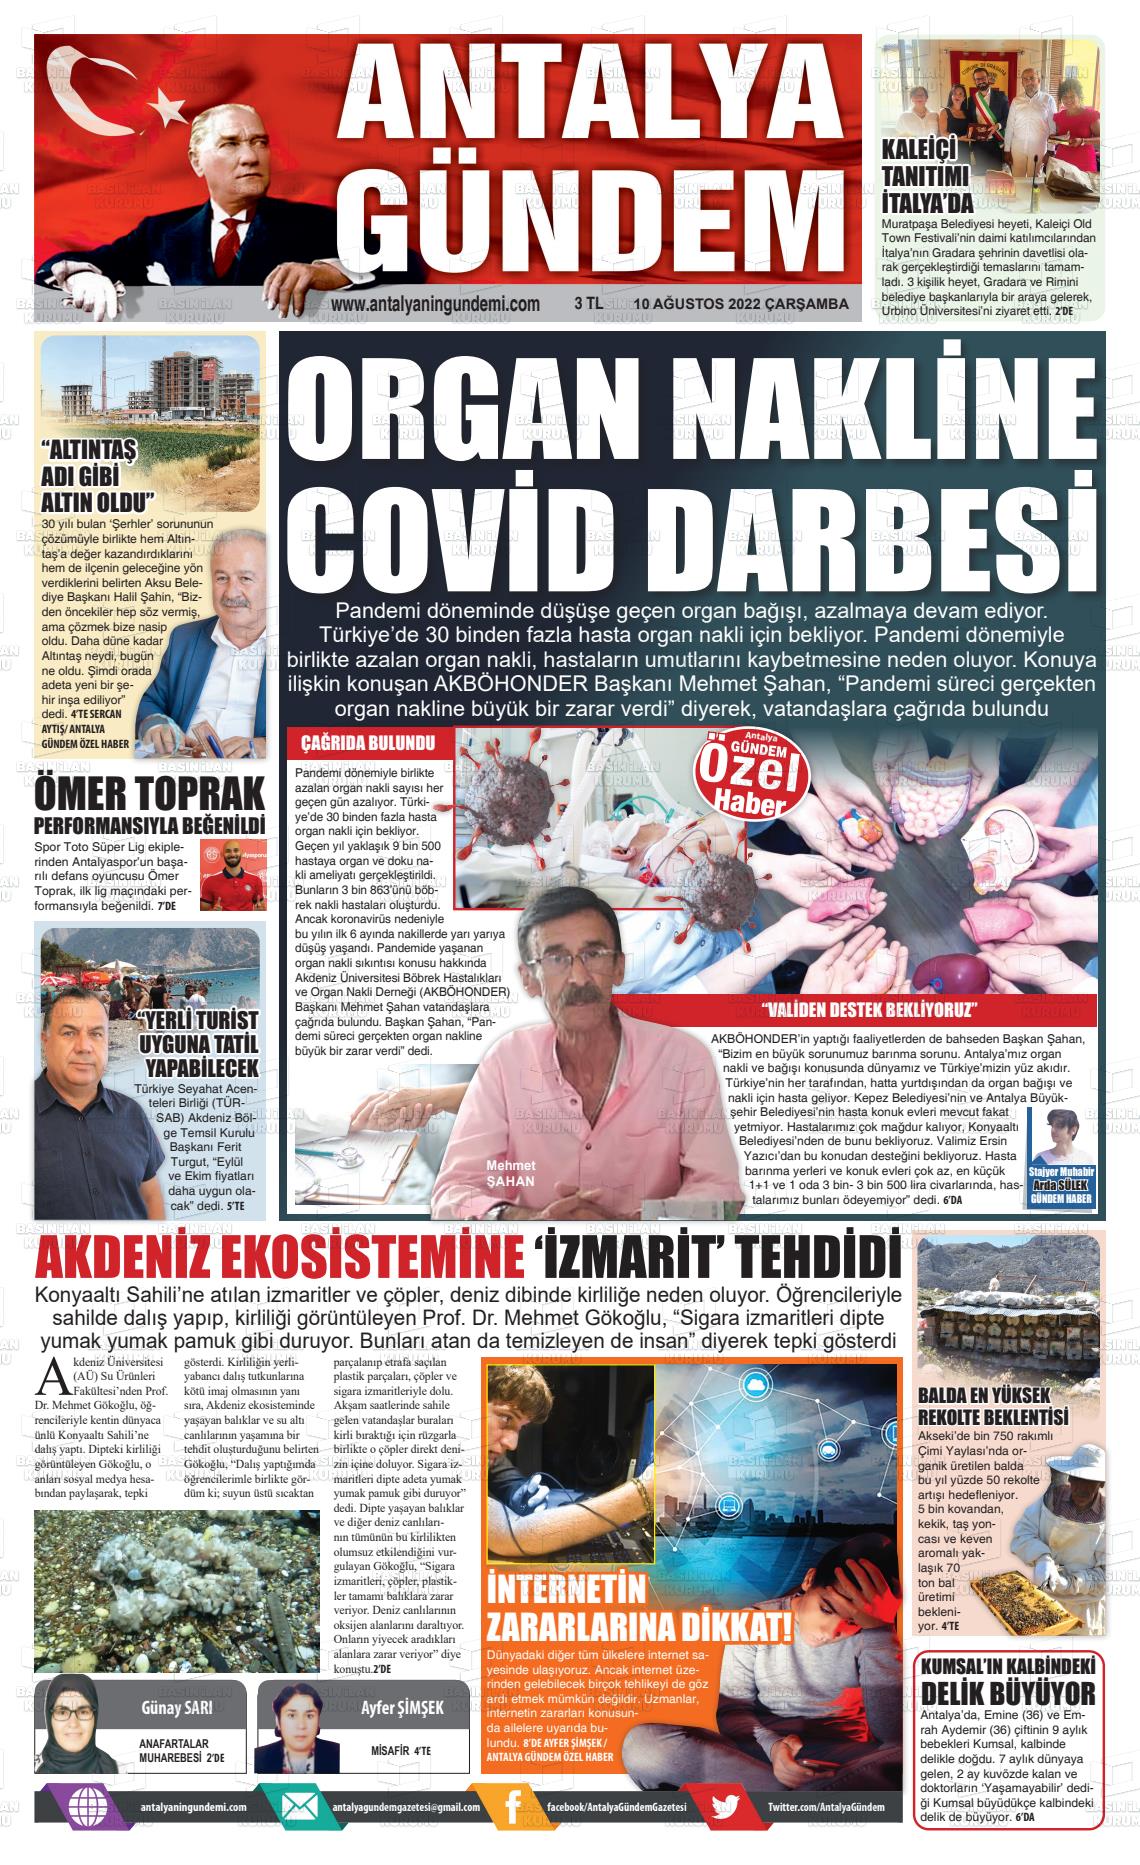 10 Ağustos 2022 Antalya'nın Gündemi Gazete Manşeti